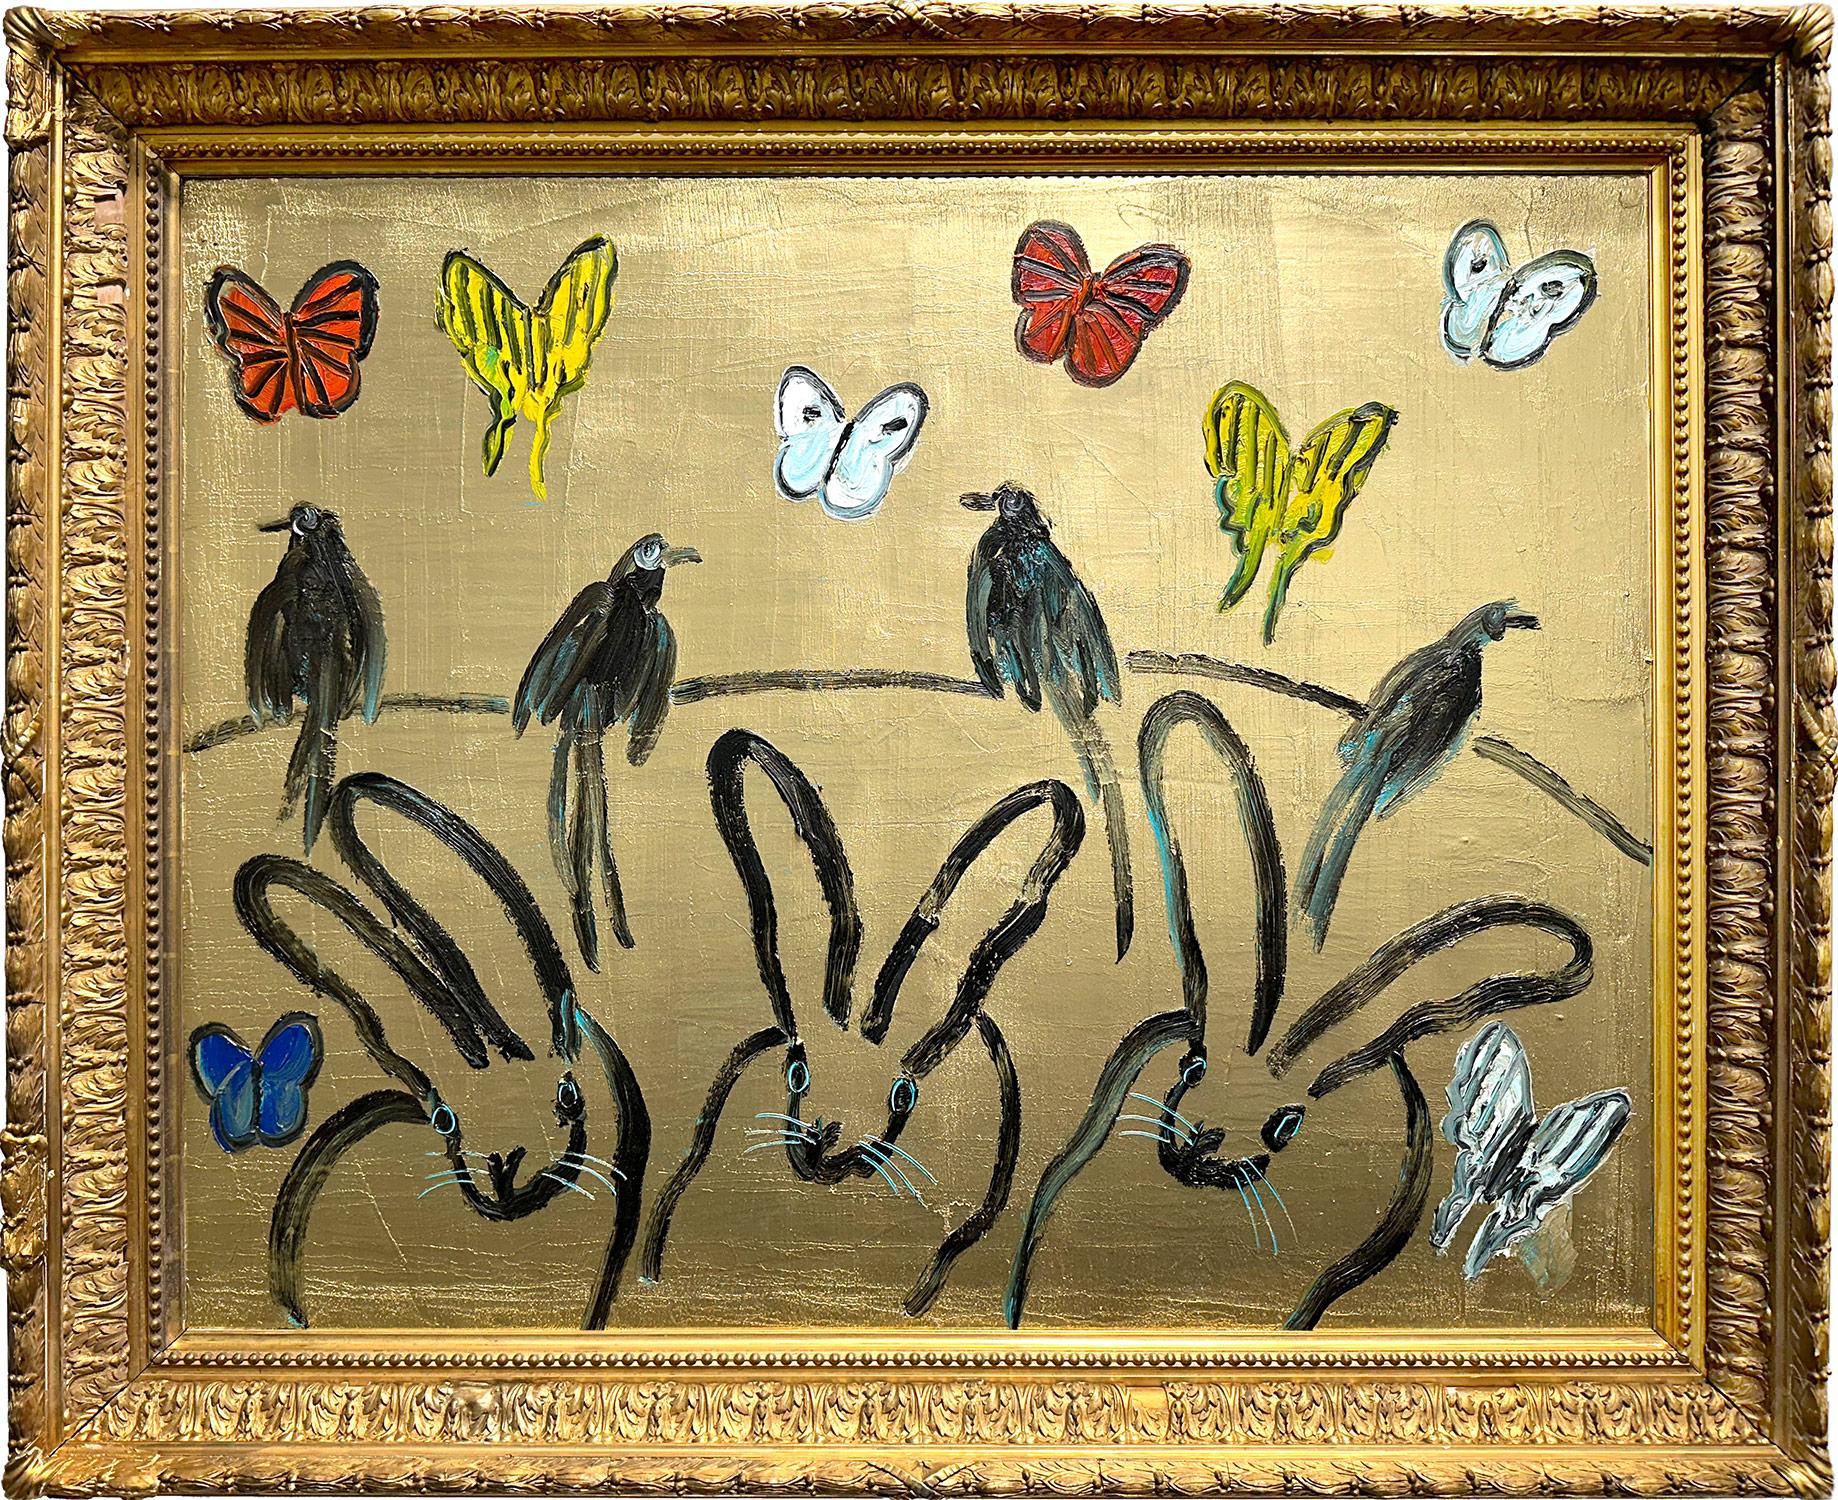 Abstract Painting Hunt Slonem - Peinture à l'huile « Whydahs Longtail » représentant des lapins, des oiseaux et des papillons sur fond doré